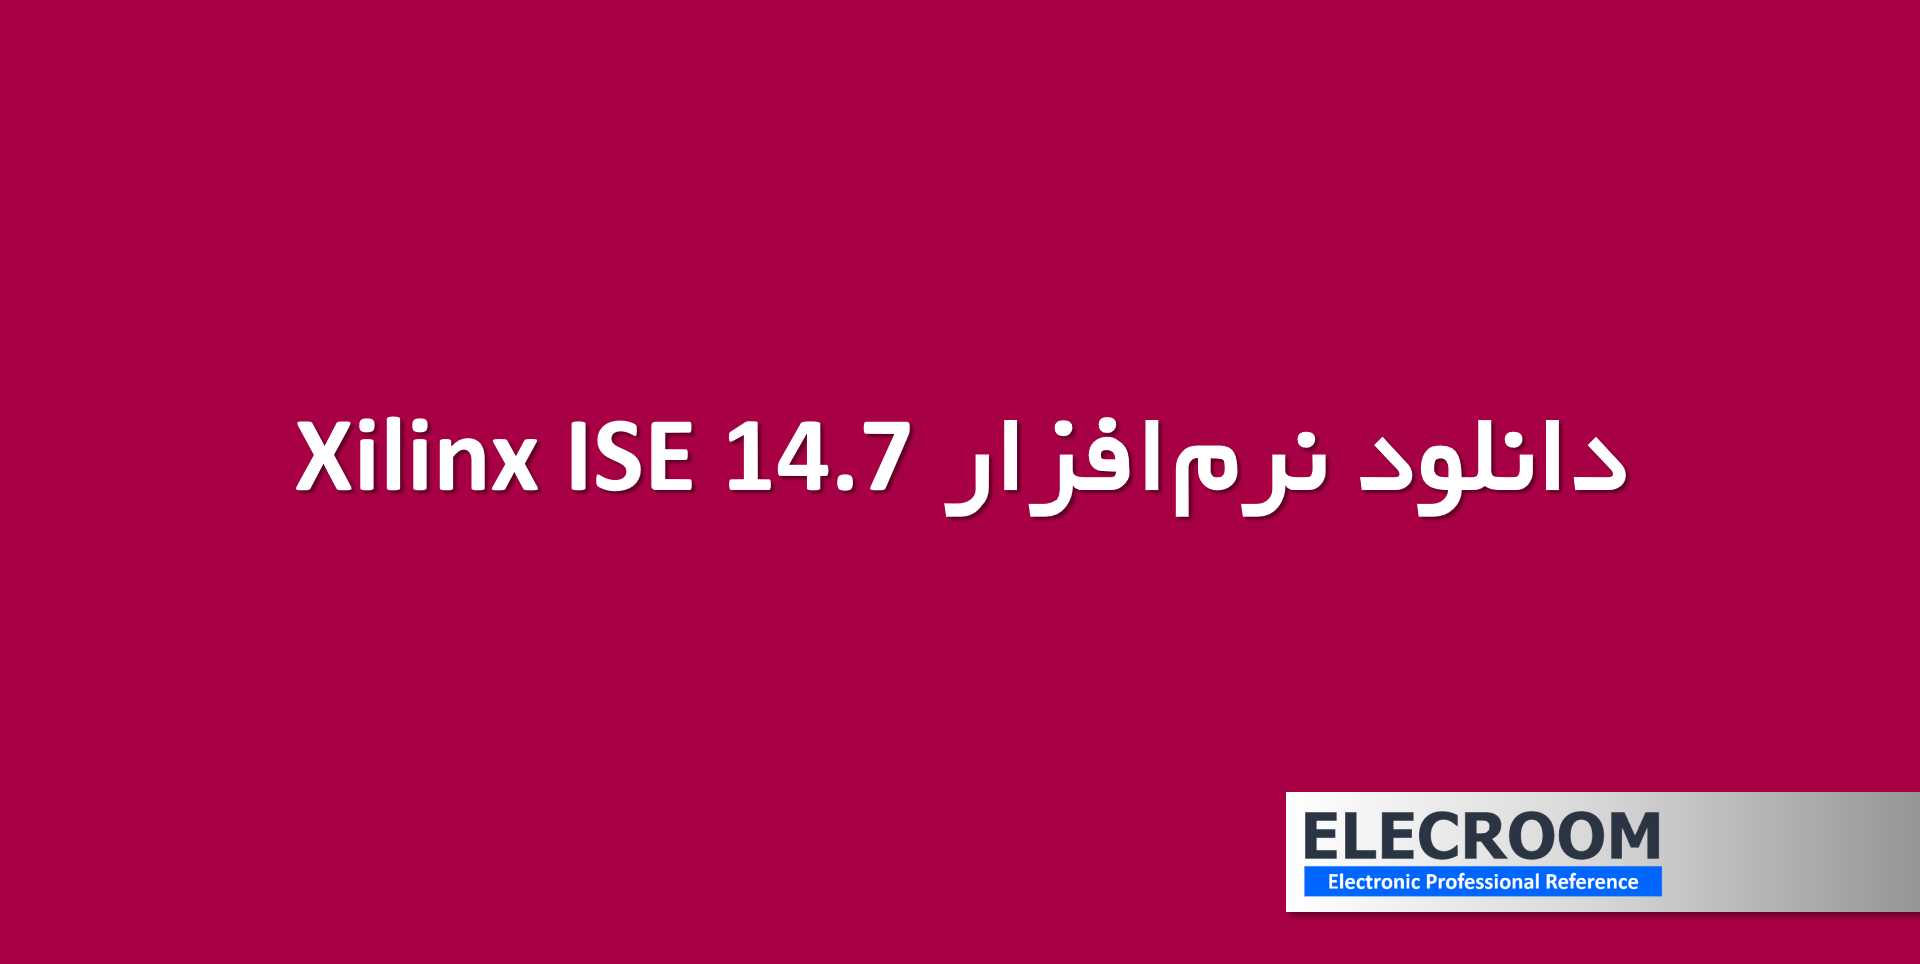 دانلود نرم افزار Xilinx ISE 14.7